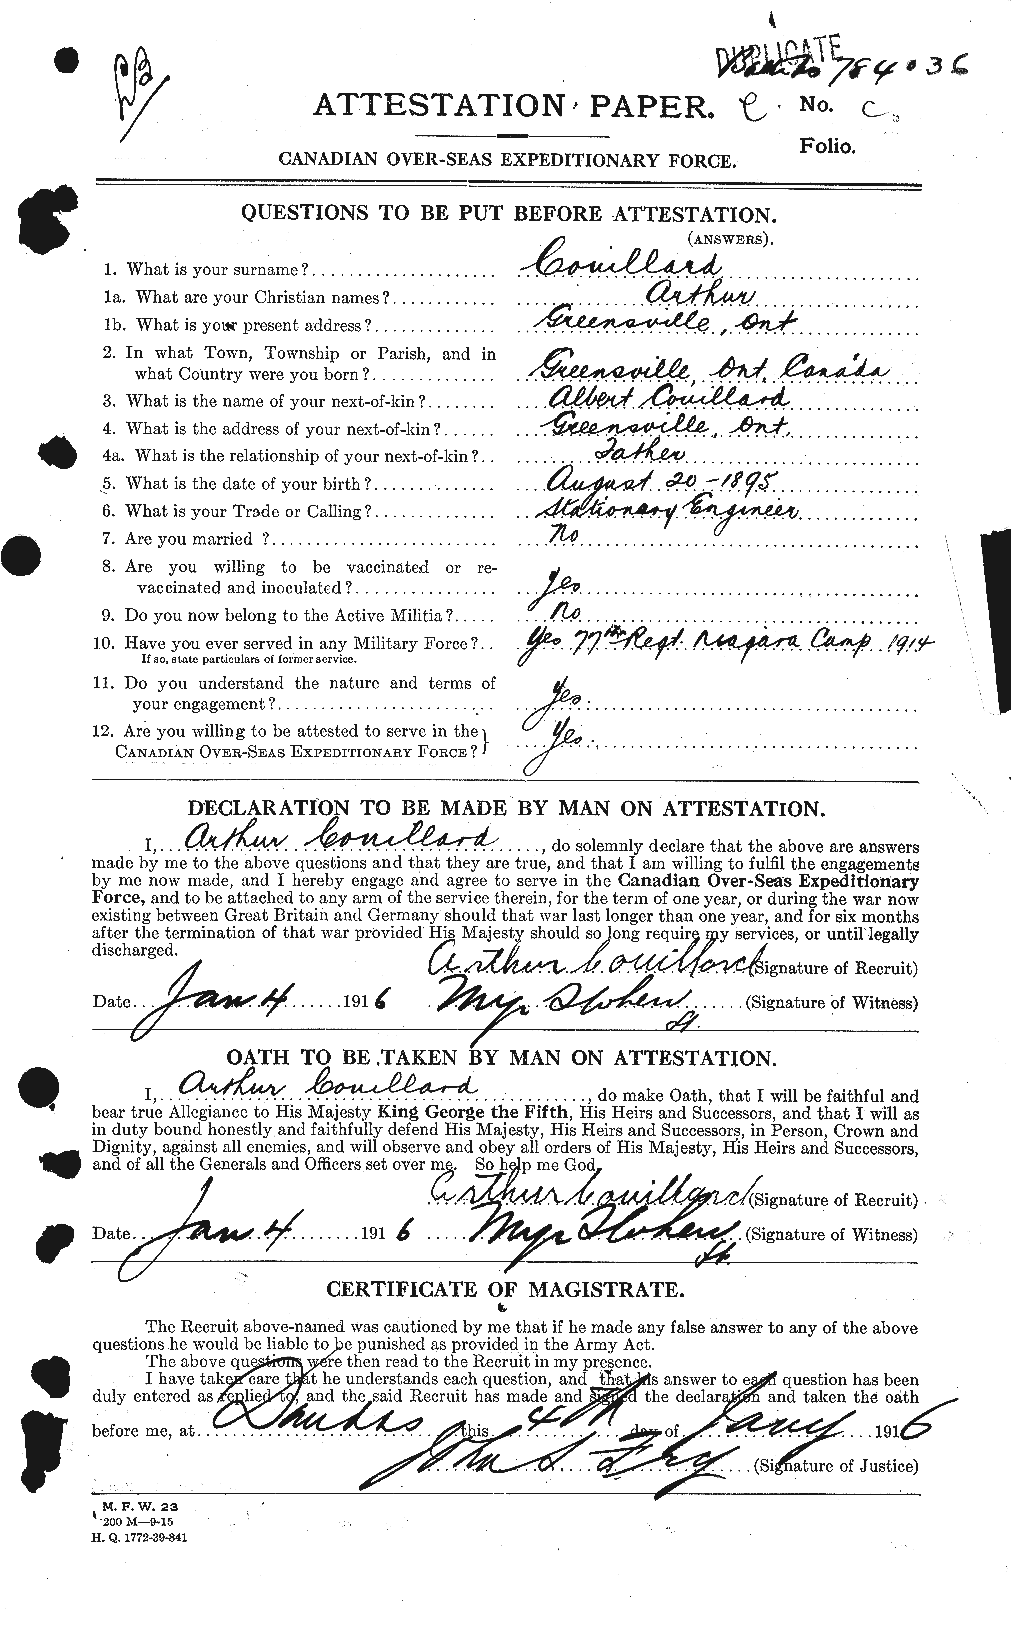 Dossiers du Personnel de la Première Guerre mondiale - CEC 057383a